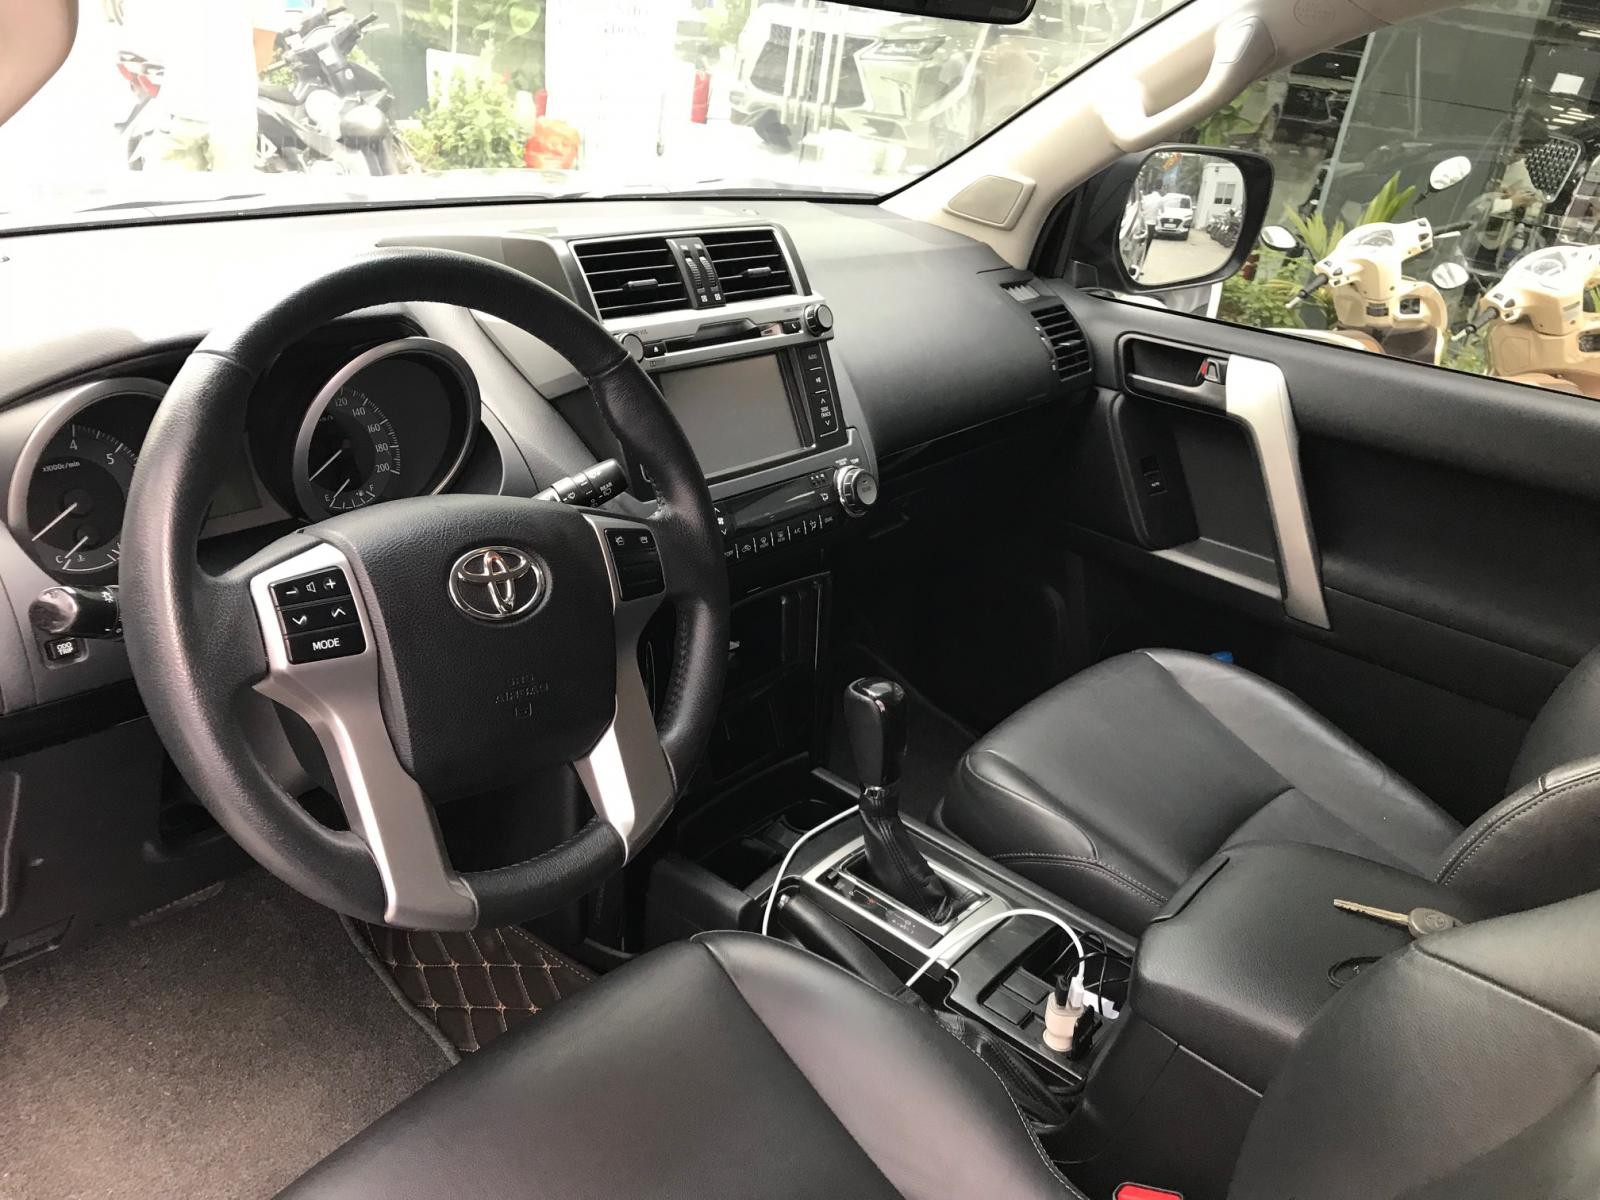 Bán xe Toyota Prado 2.7 sản xuất 2016 màu đen xe siêu đẹp, chính chủ từ đầu